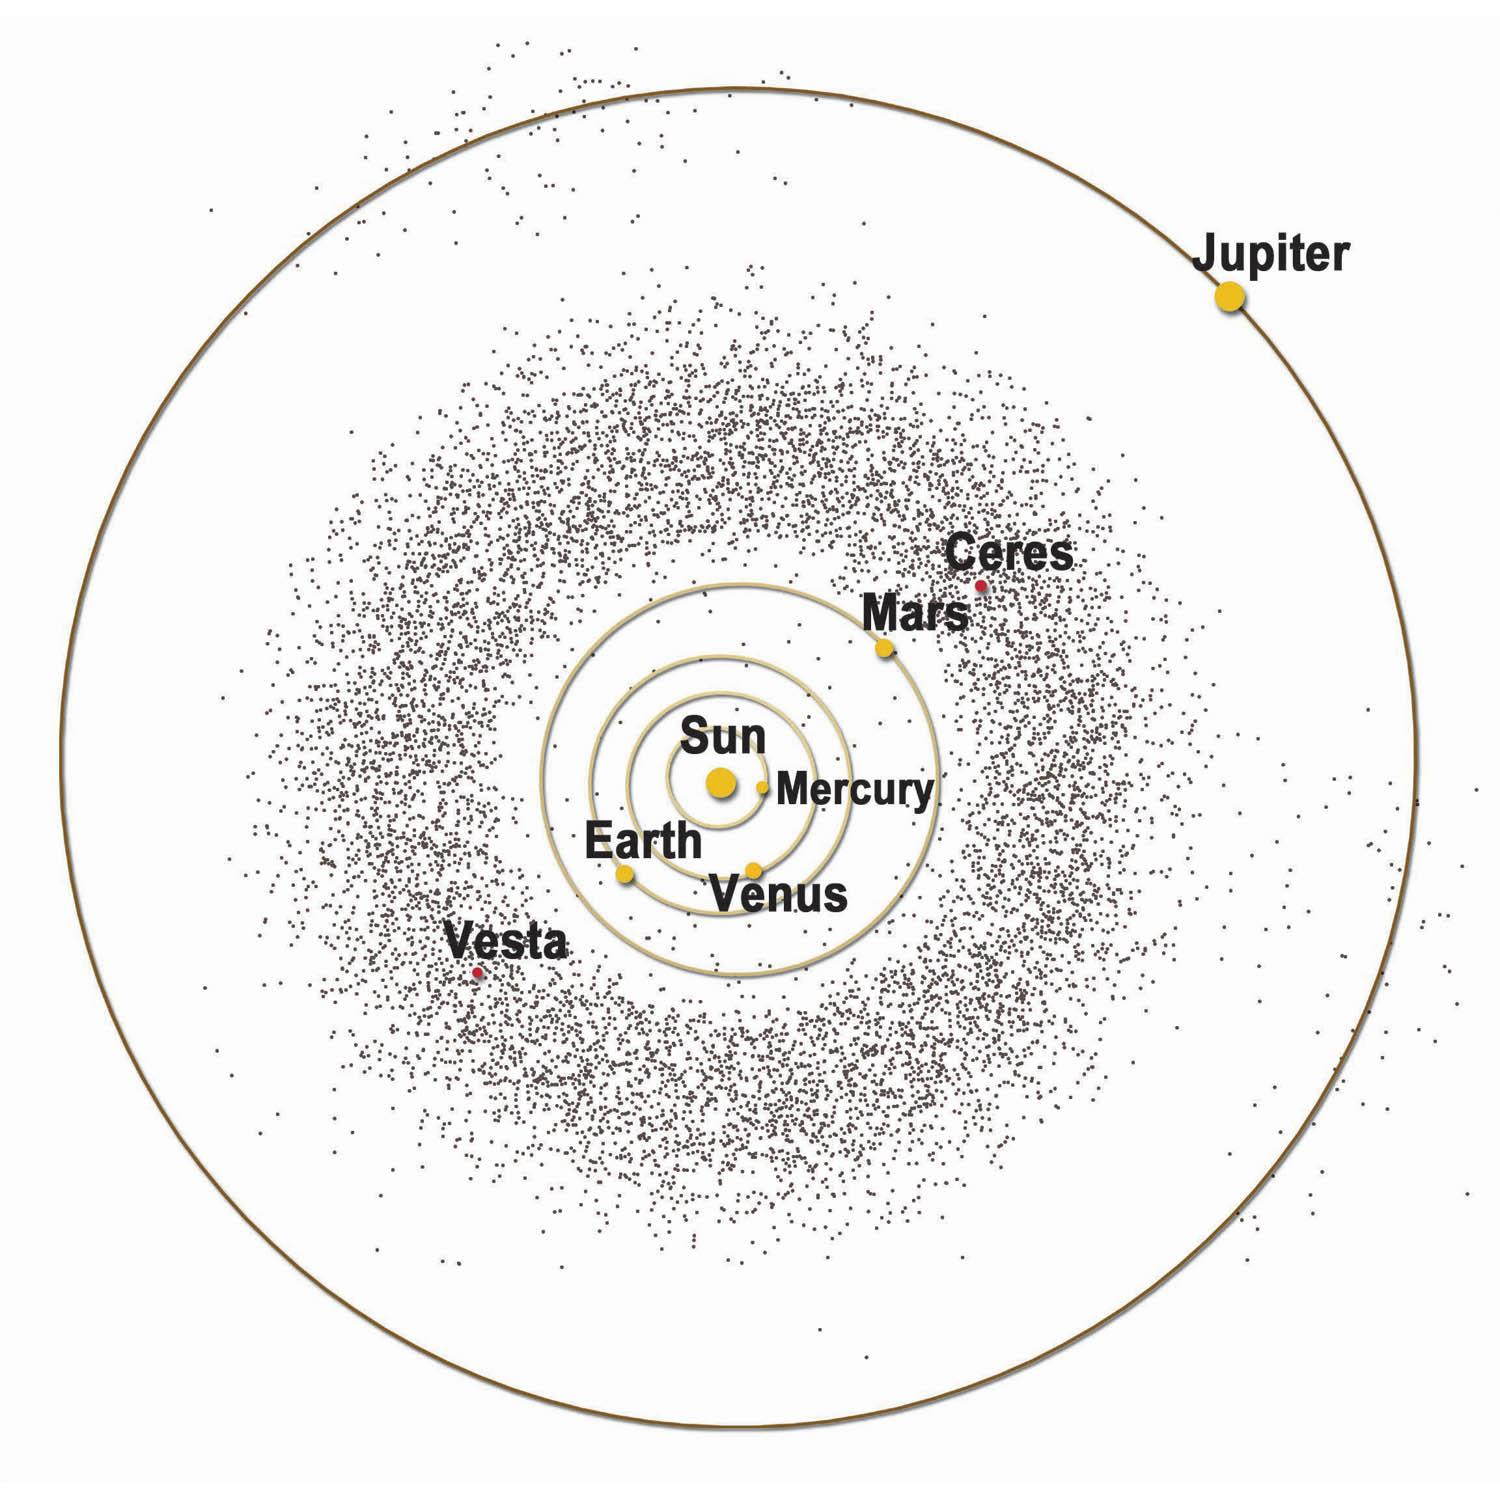 O cinturão de asteroides estudado, entre Marte e Júpiter, em representação da NASA.